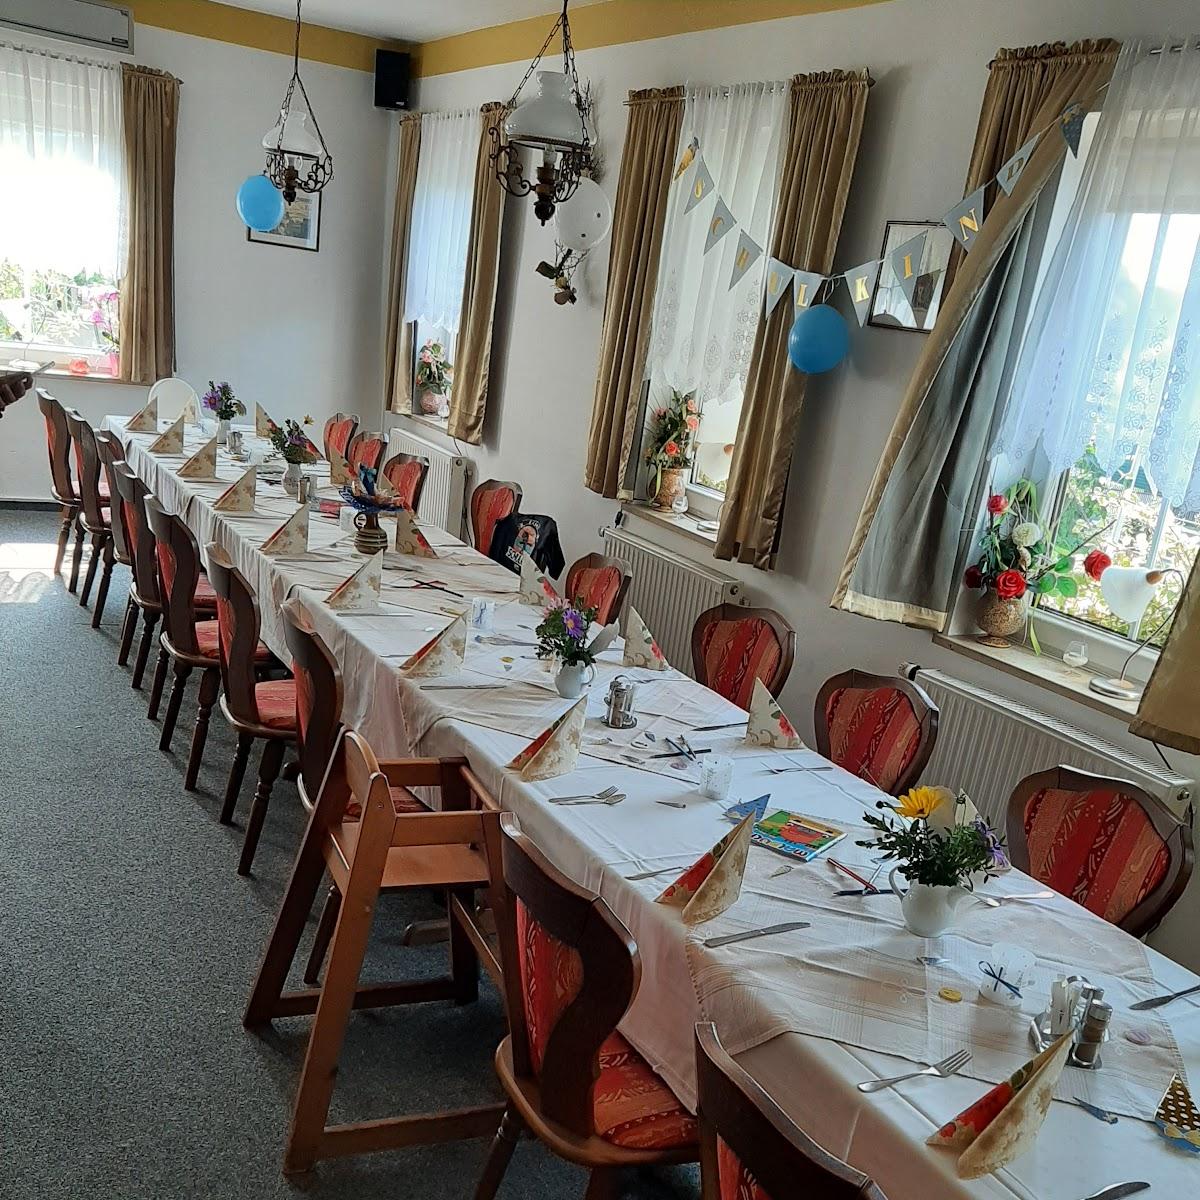 Restaurant "Lindengarten" in Plauen